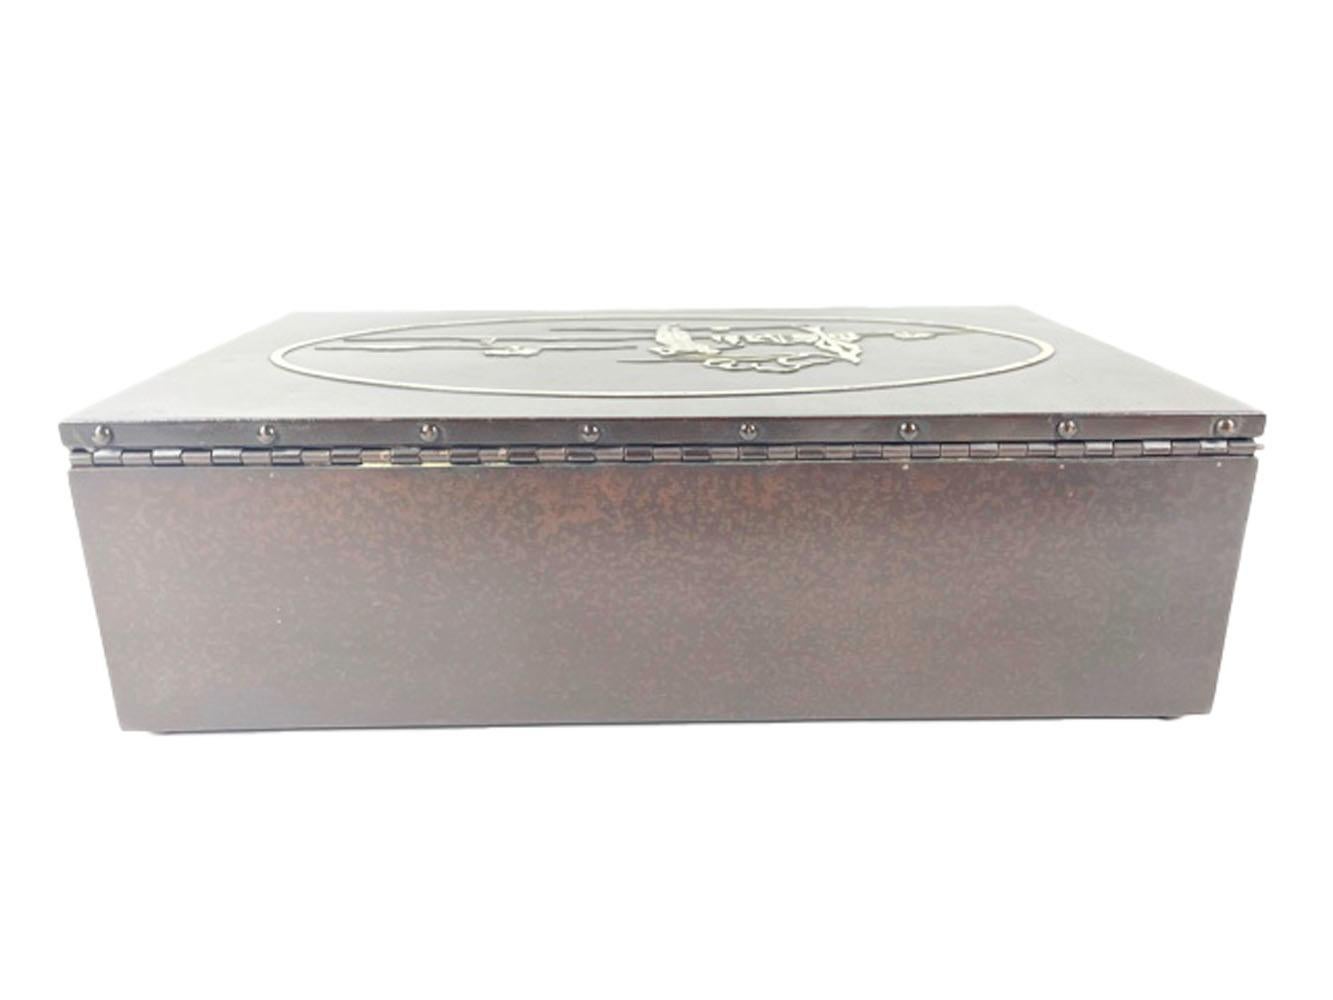 Zigarrenhumidor aus Bronze und Sterlingsilber im Art-Deco-Stil, hergestellt von der Heintz Metal Art Company. Die rechteckige Bronzebox ist mit Zedernholz ausgekleidet und hat eine gesprenkelte braune Patina. Auf dem Deckel ist eine Golfszene aus